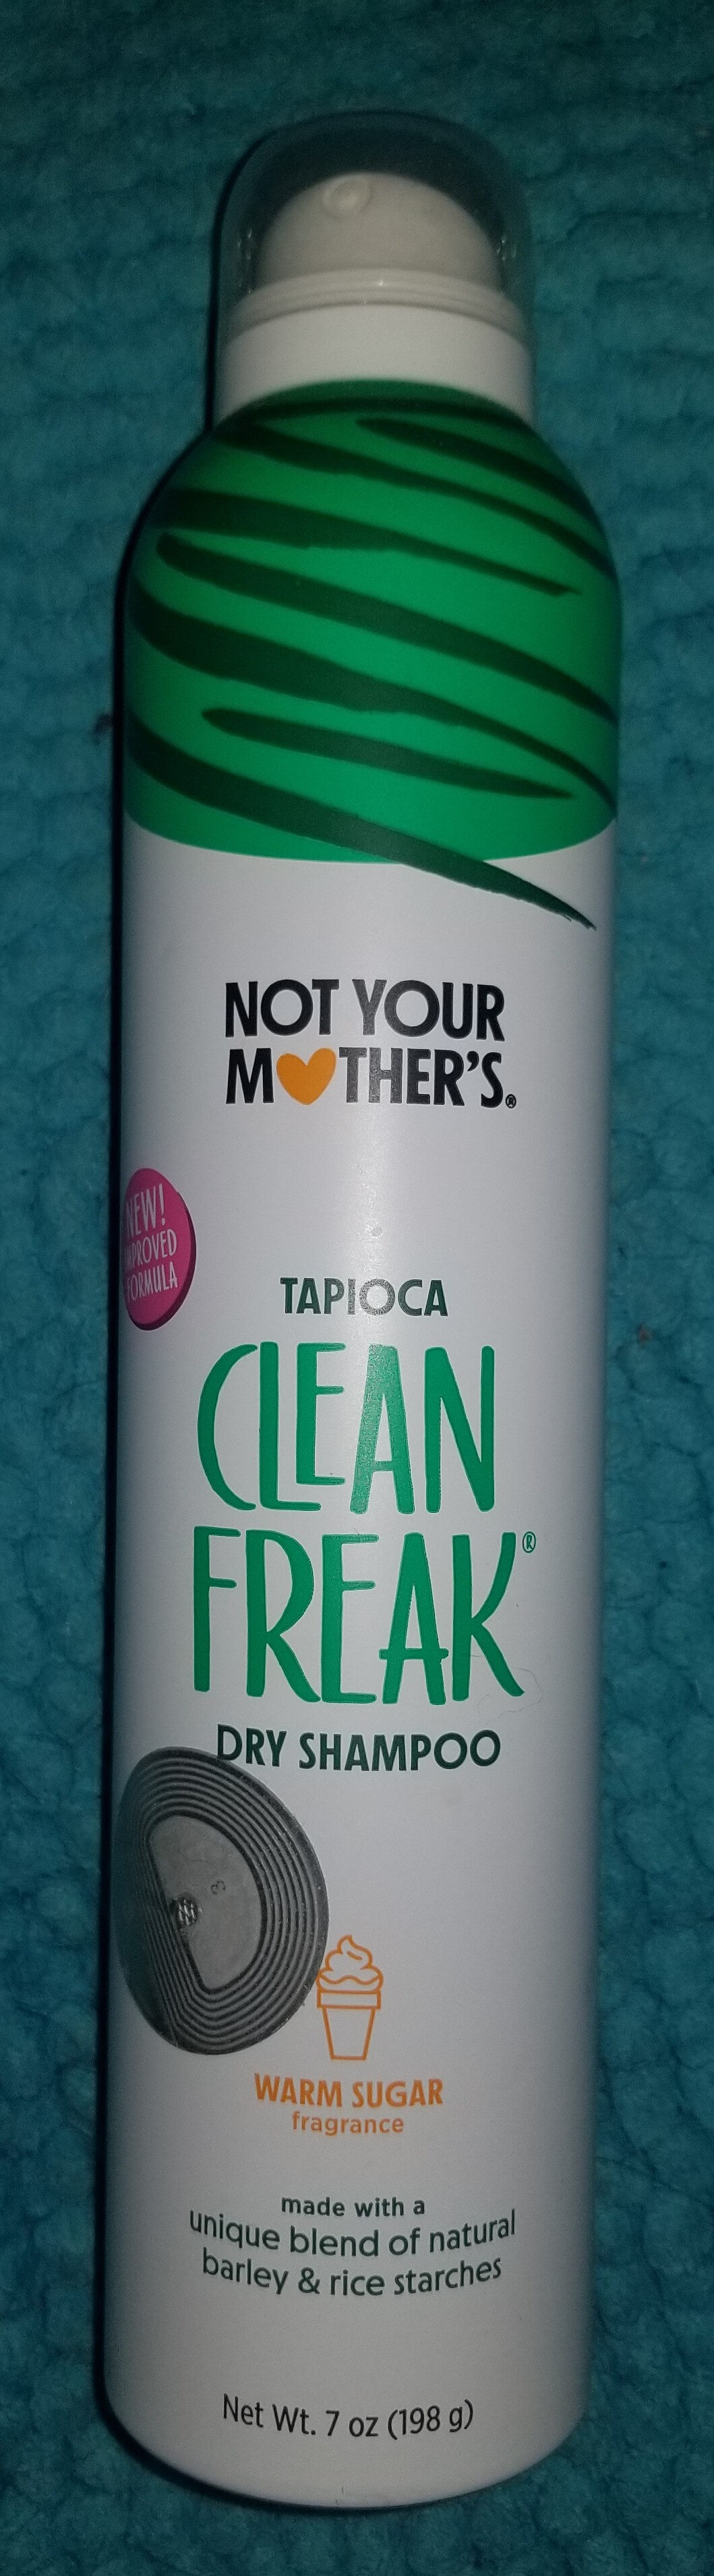 Clean Freak Tapioca Dry Shampoo - Produkt - en